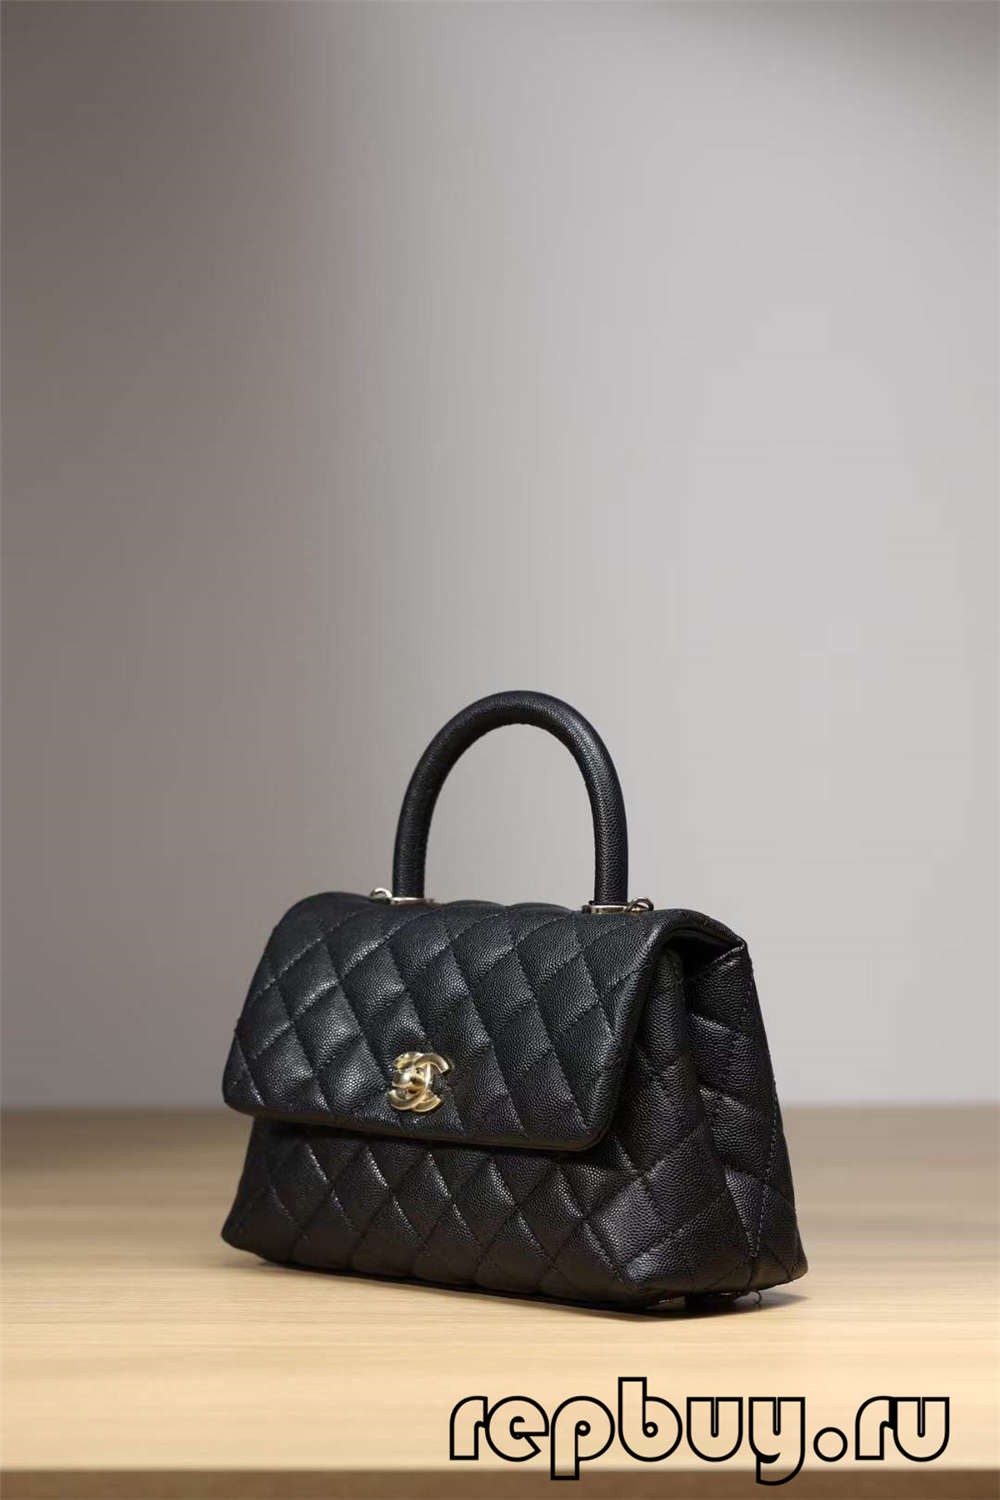 Chanel Coco Saplı Üst Çoğaltma Çanta Siyah Altın Tokalı Görünüm (2022 Güncellendi)-En İyi Kalite Sahte Louis Vuitton Çanta Online Mağaza, Çoğaltma tasarımcı çanta ru